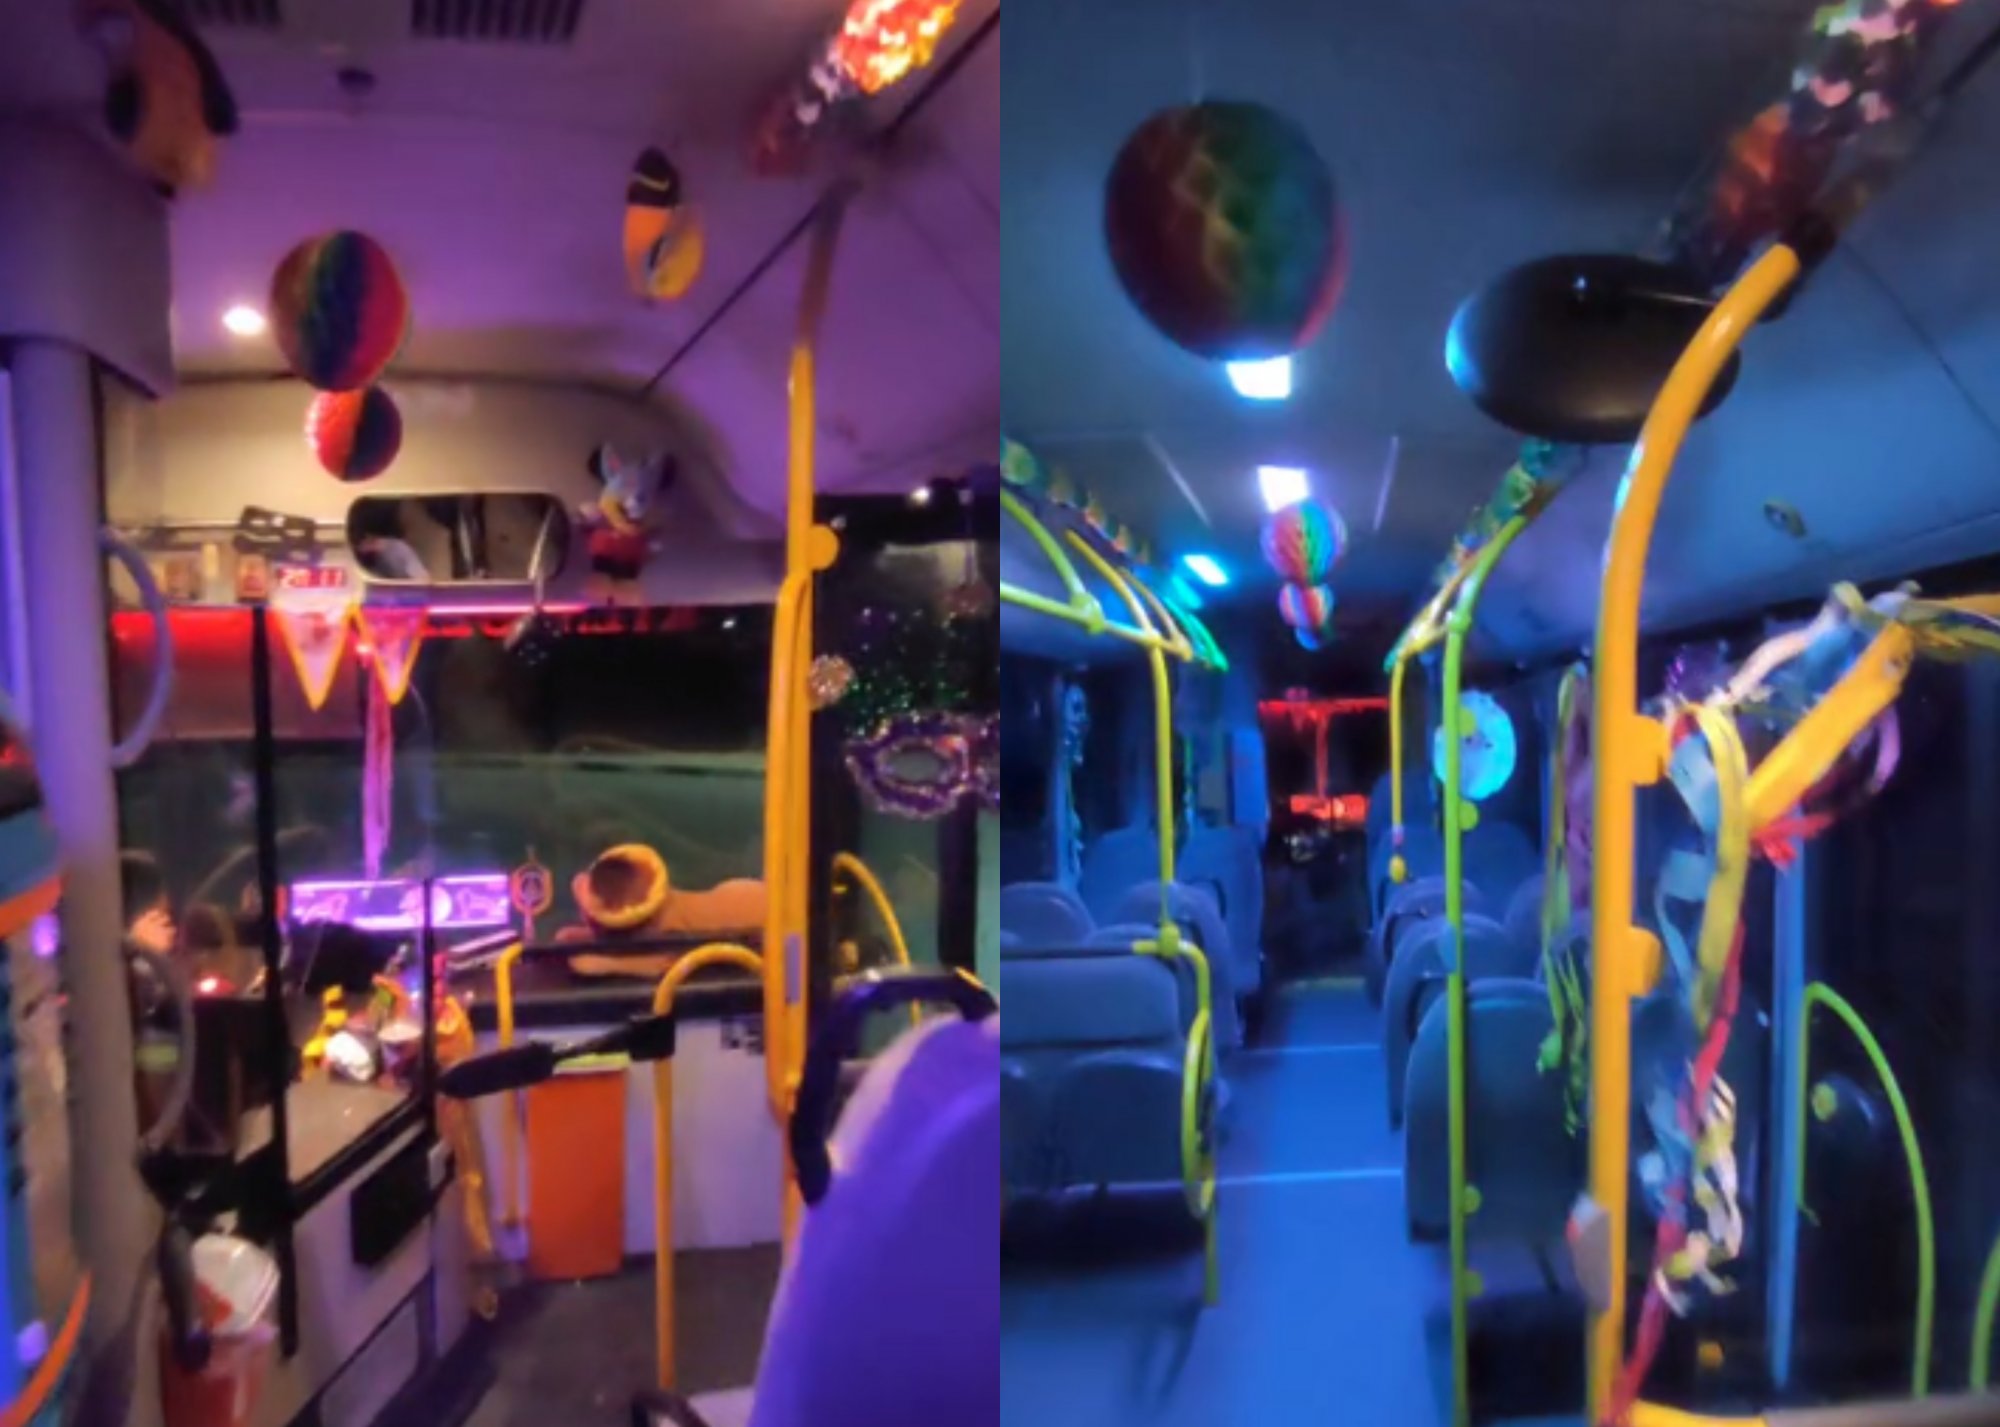 Θεσσαλονίκη: Μάσκες, σερπαντίνες και πολύχρωμα φώτα - Viral το στολισμένο λεωφορείο με αποκριάτικα